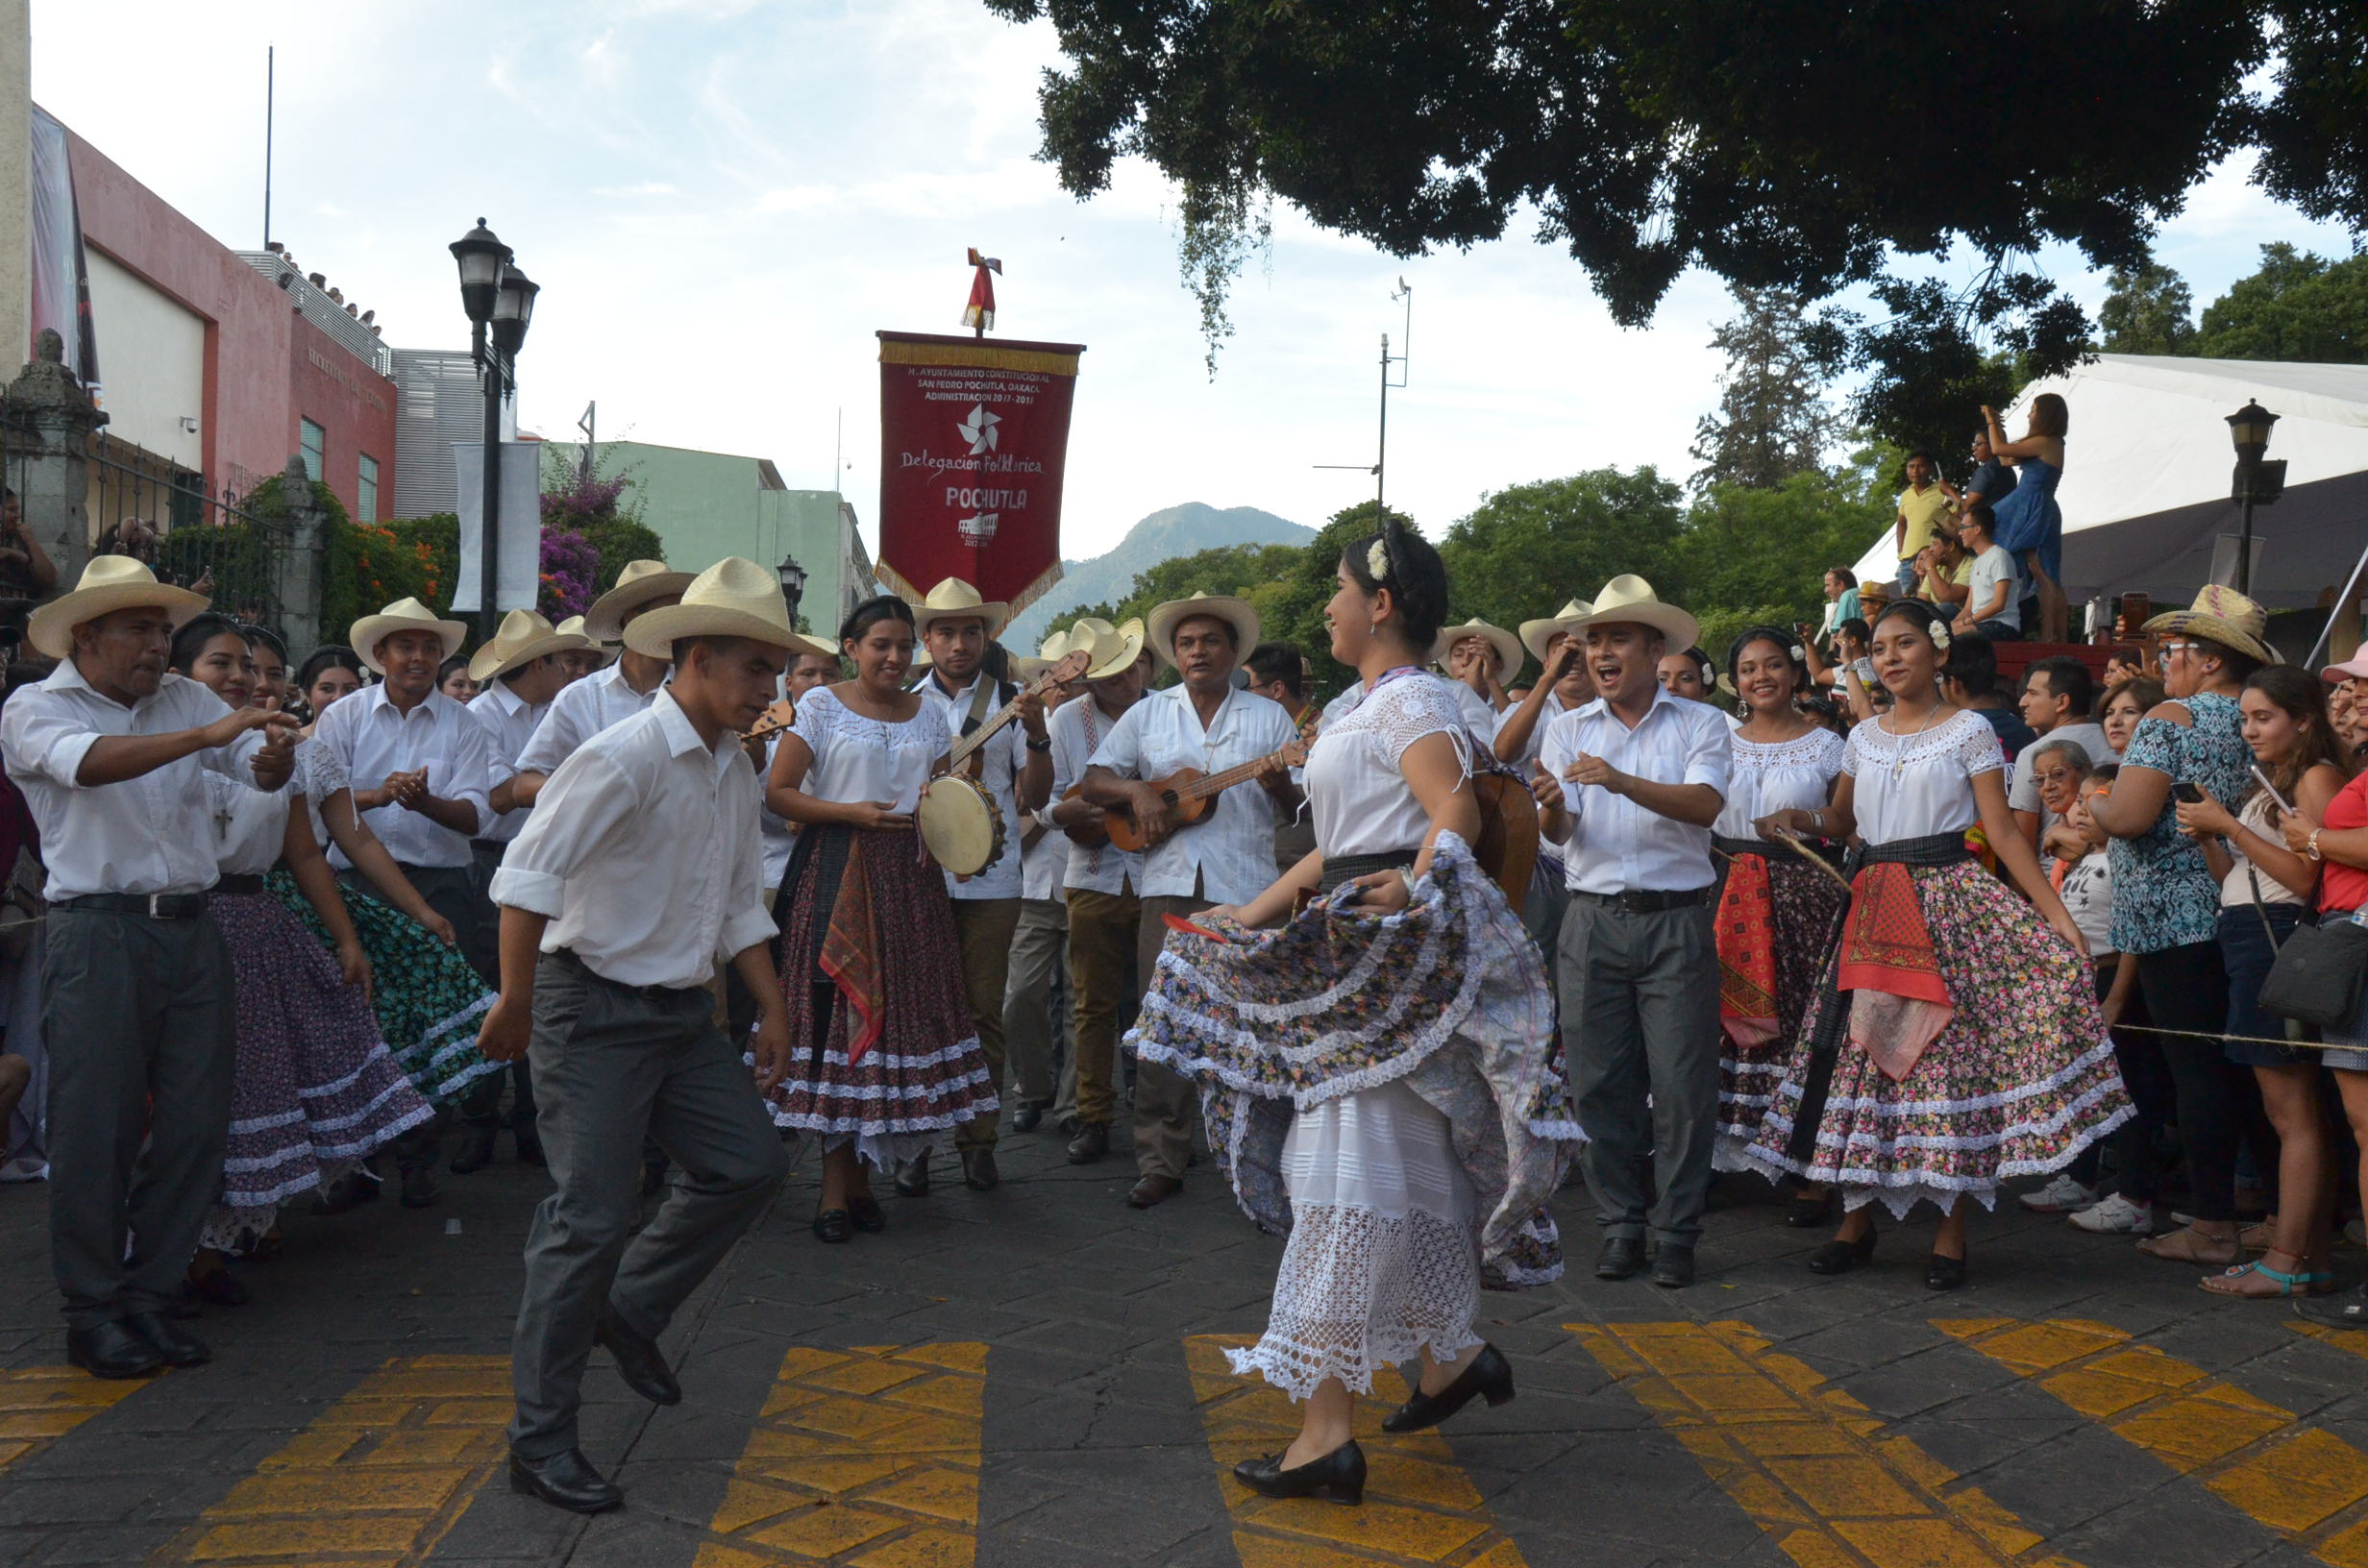 Único y esplendoroso, el desfile de delegaciones | El Imparcial de Oaxaca